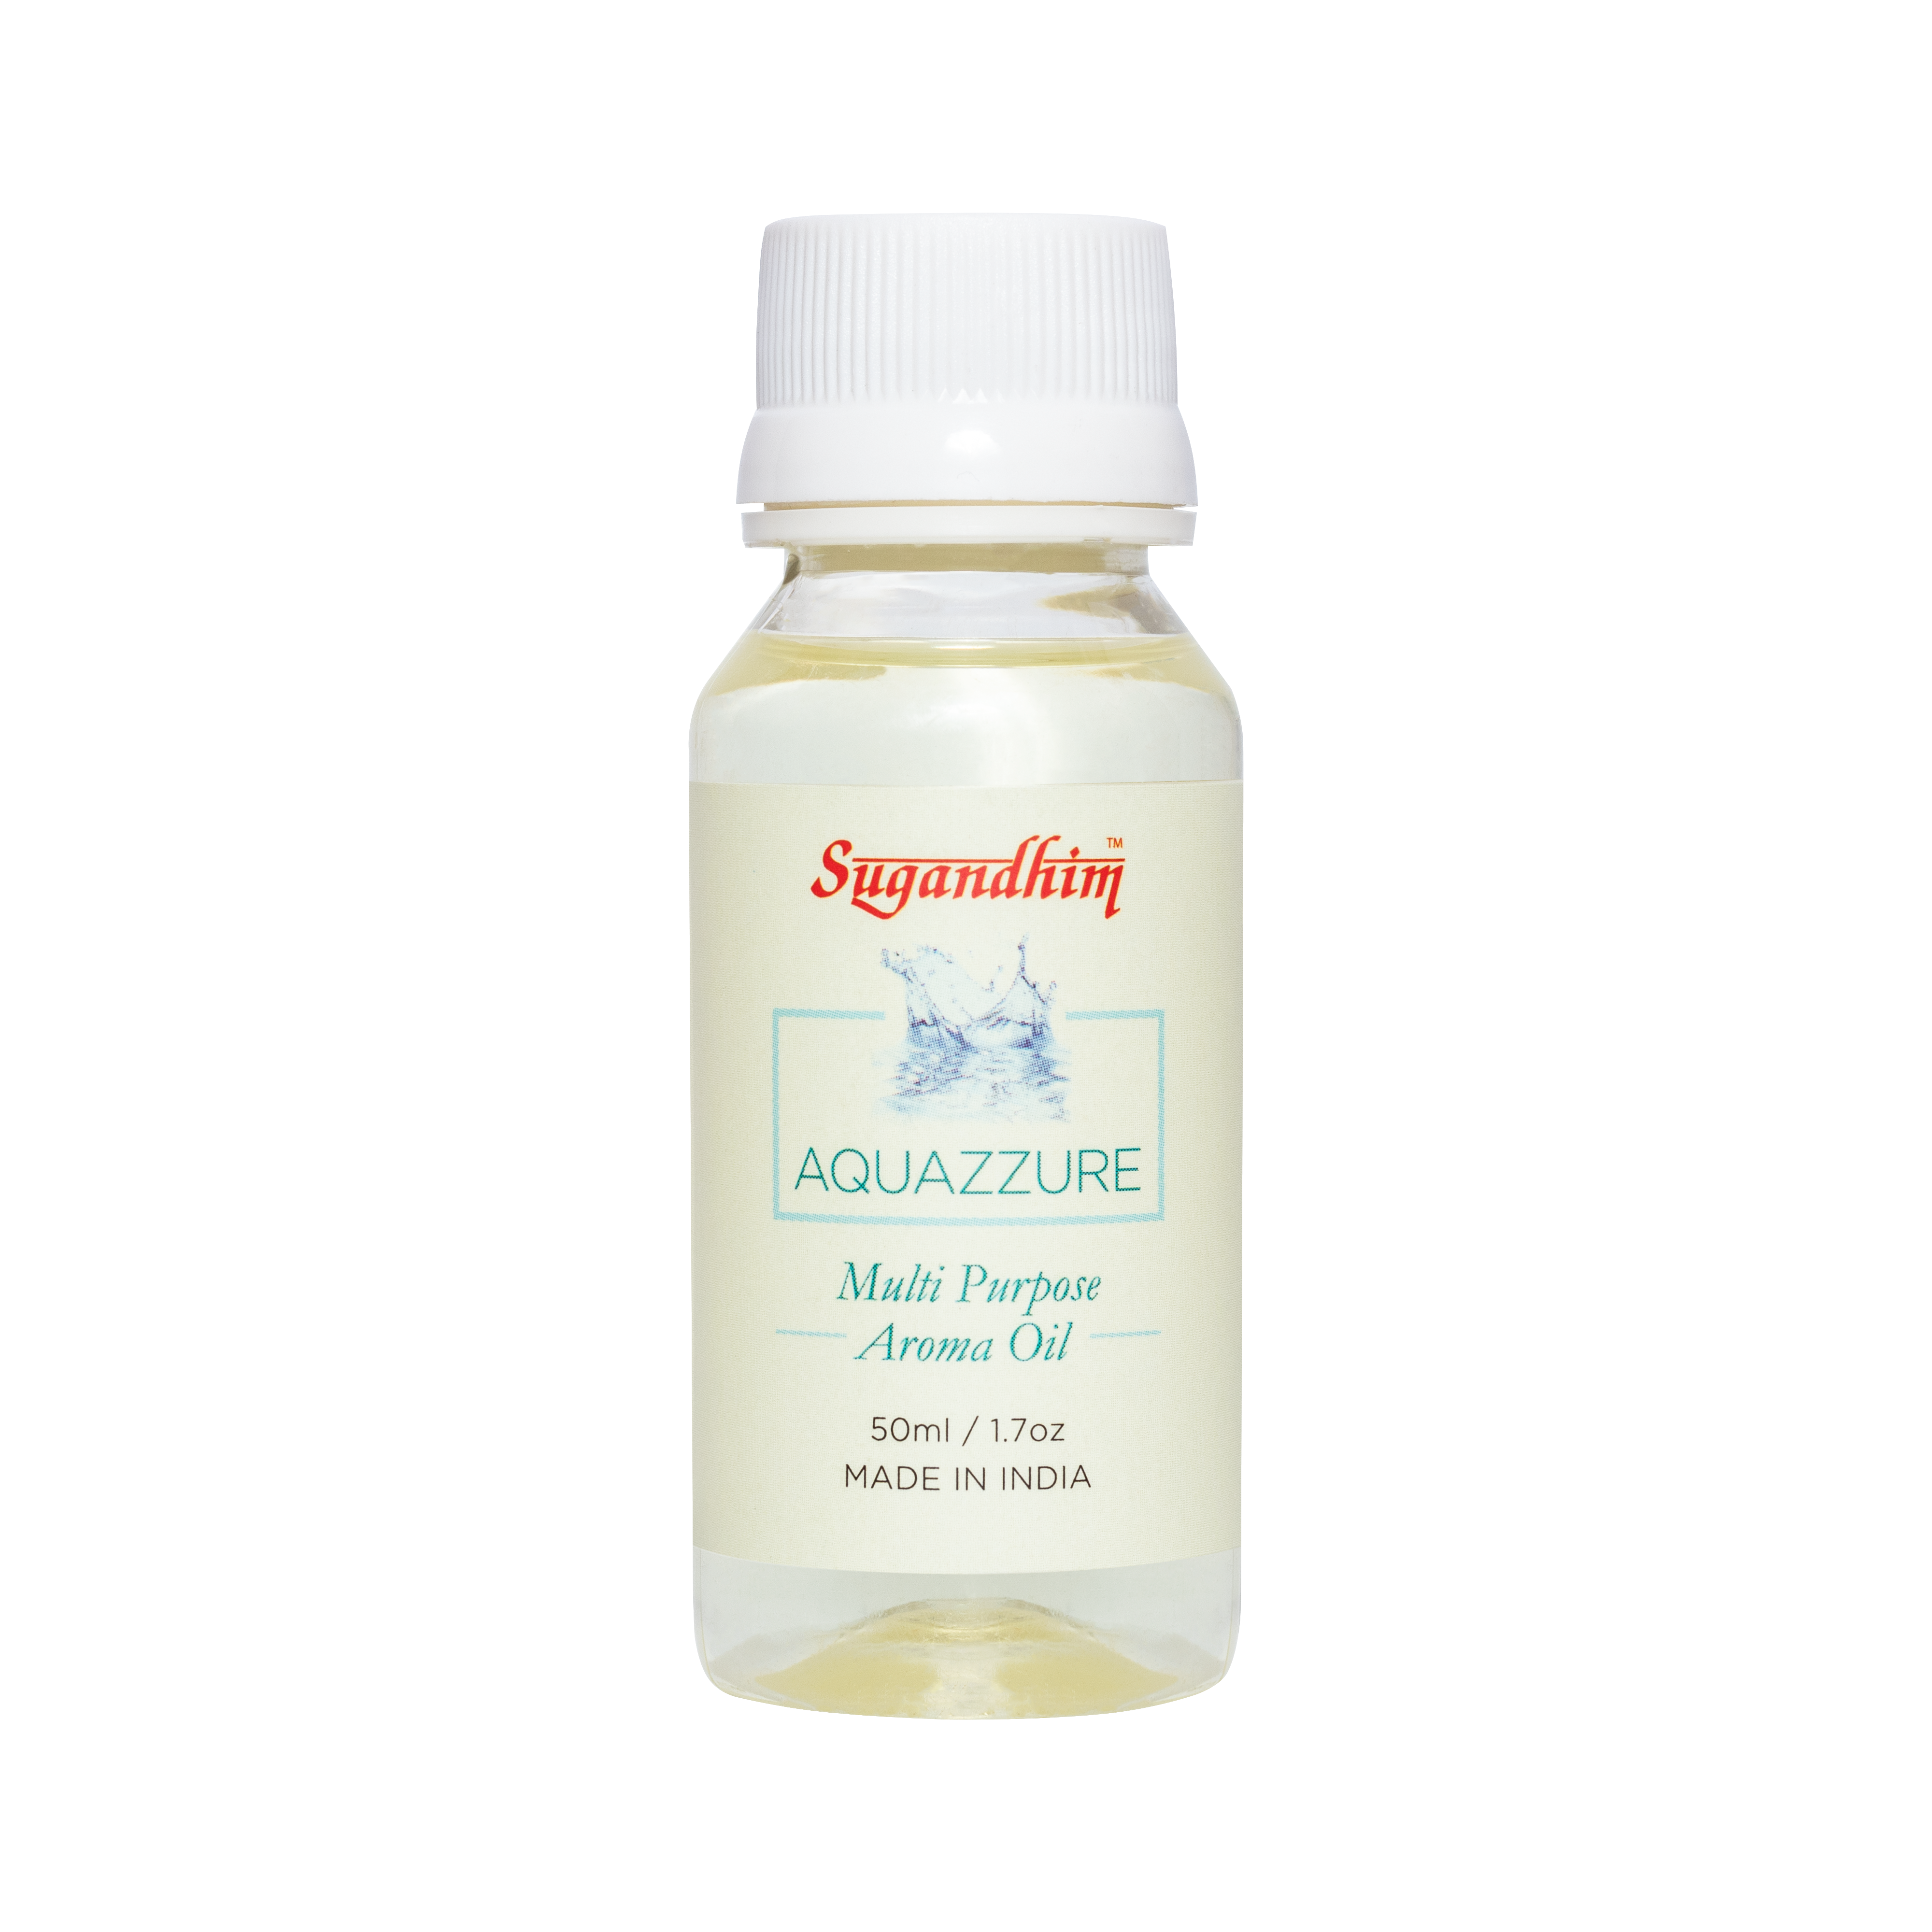 Aquazzure Multi-Purpose Aroma Oil